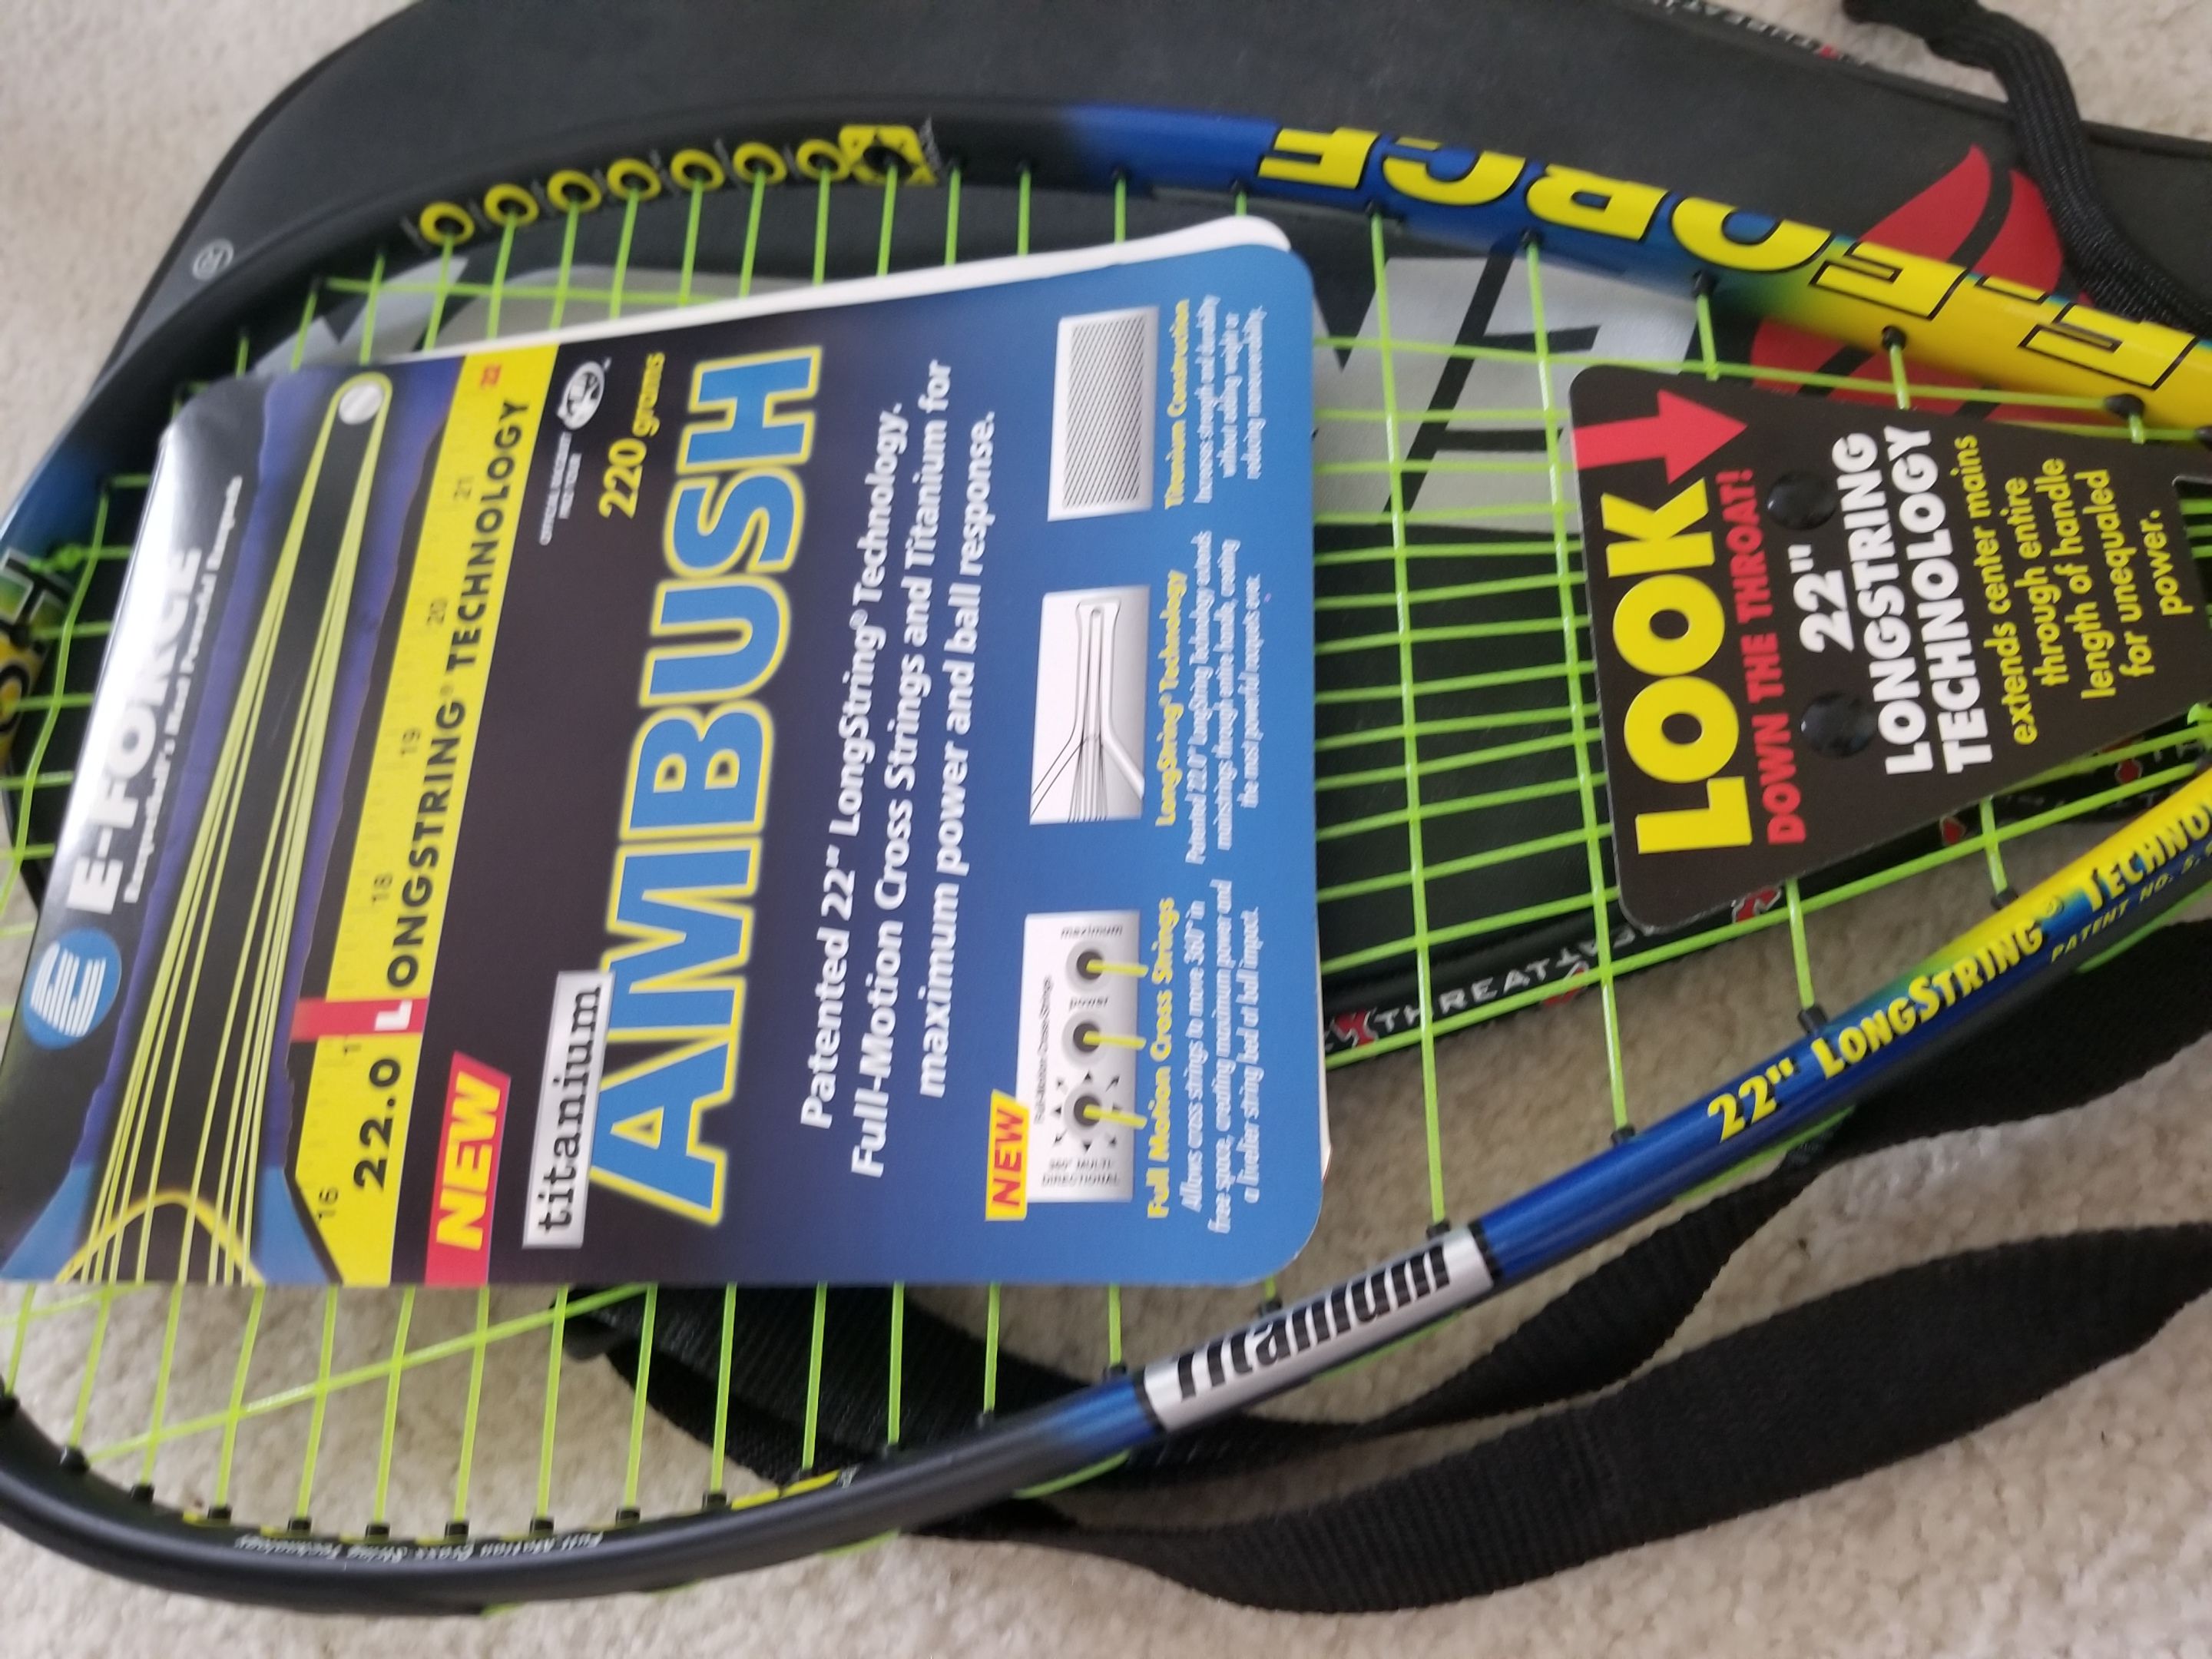 Racquetball Racket, Ektelon Brand New